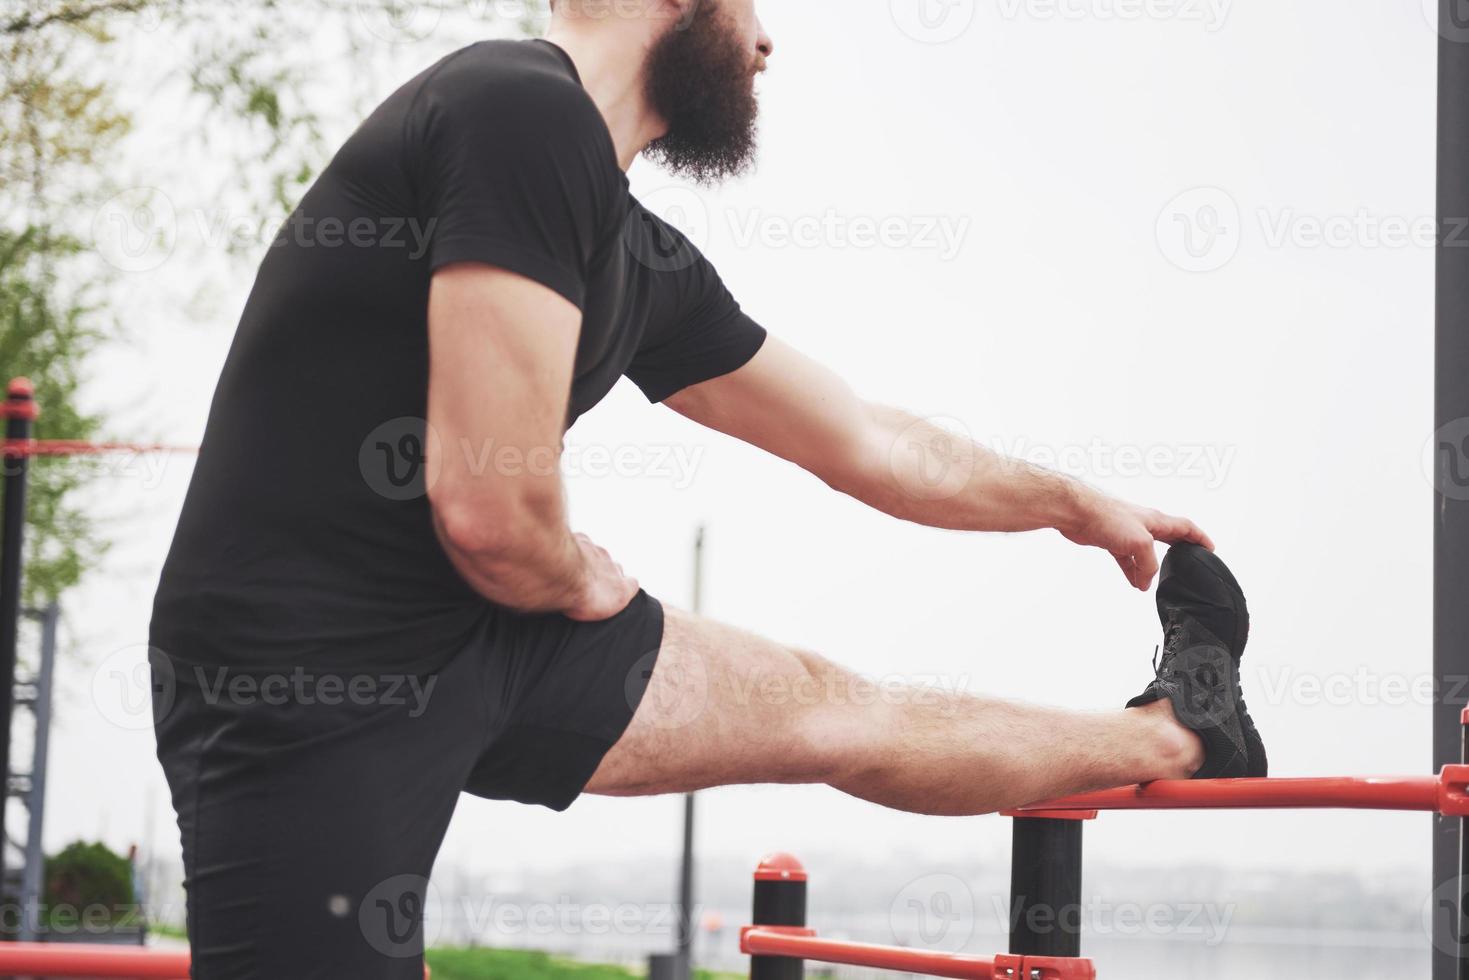 el joven barbudo practica deportes al aire libre foto